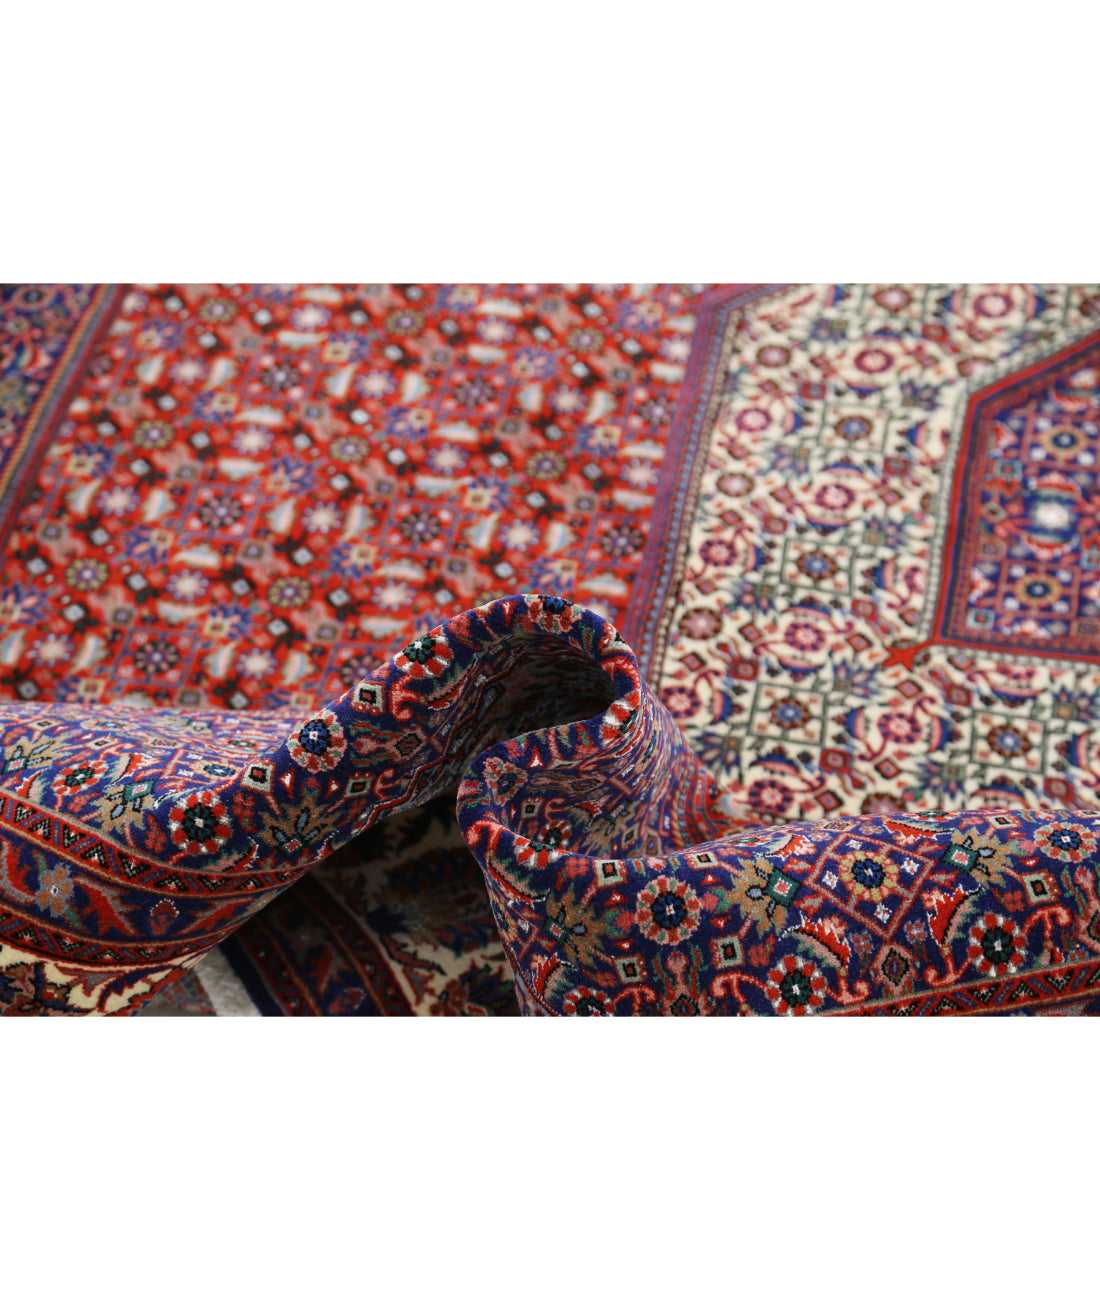 Hand Knotted Persian Bijar Wool & Silk Rug - 6'7'' x 9'10'' 6'7'' x 9'10'' (198 X 295) / Red / Ivory